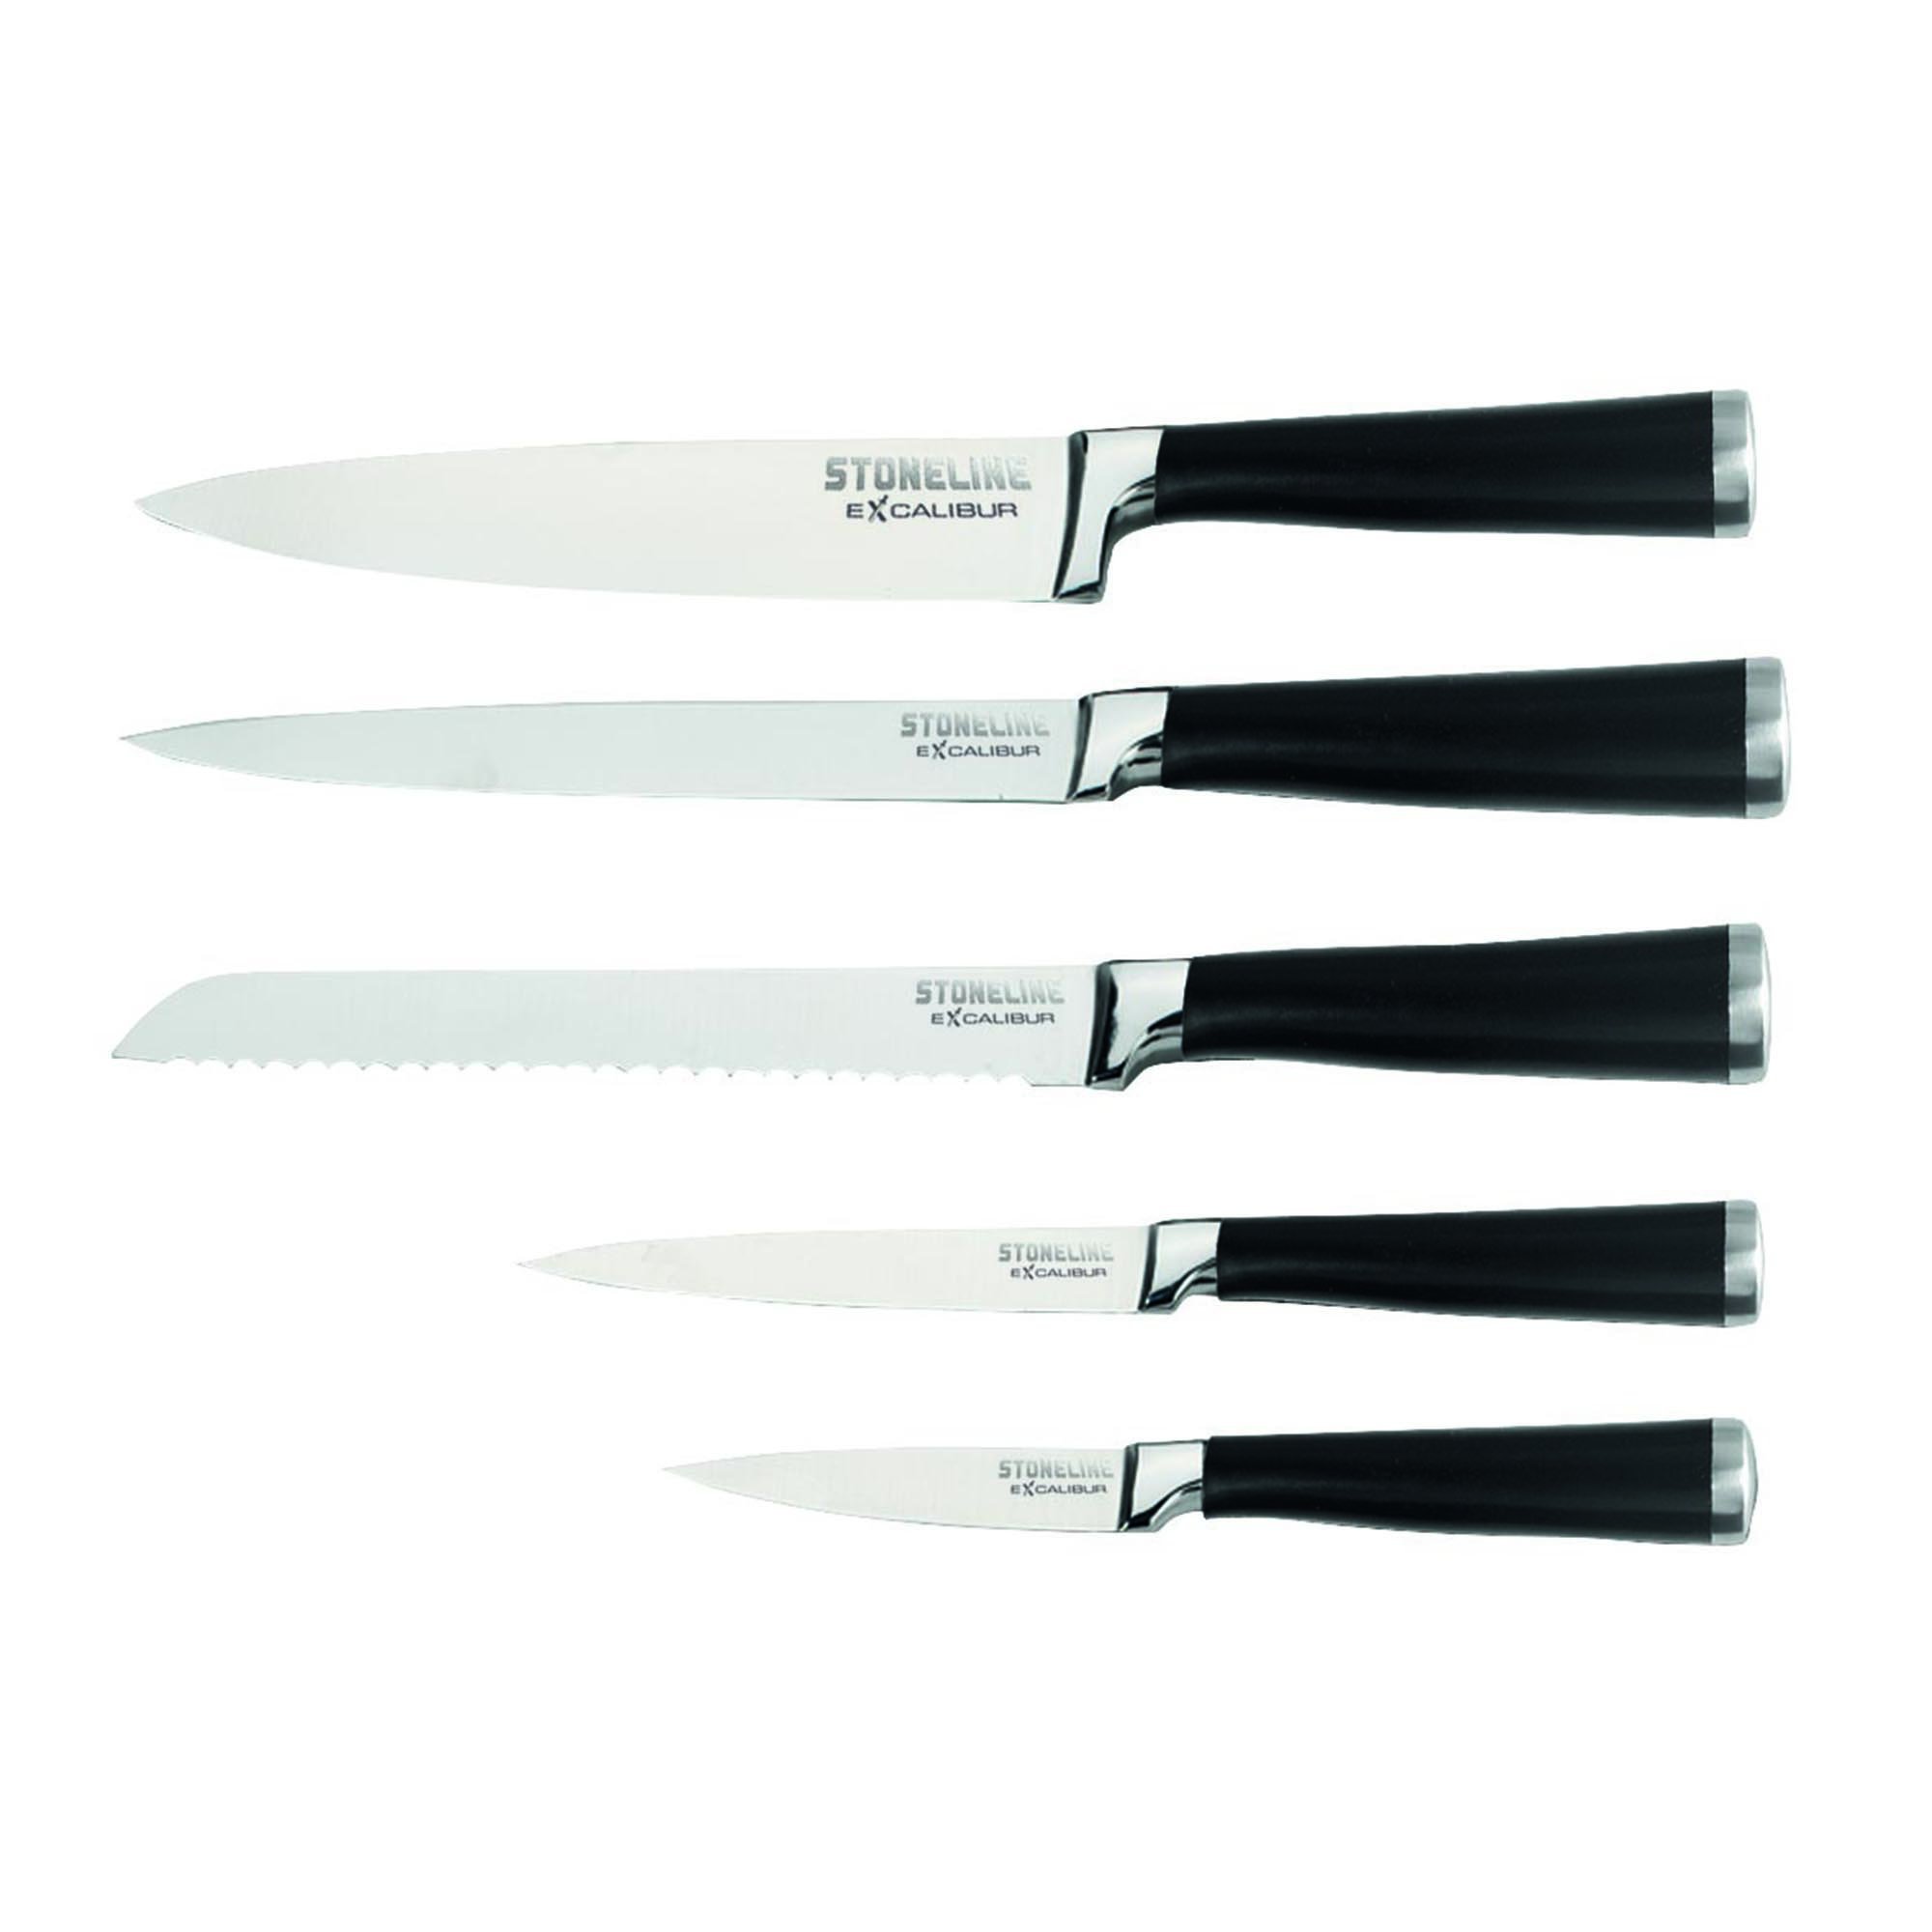 STONELINE® EXCALIBUR® set de couteaux en acier inoxydable, 7 pièces, avec bloc à couteaux